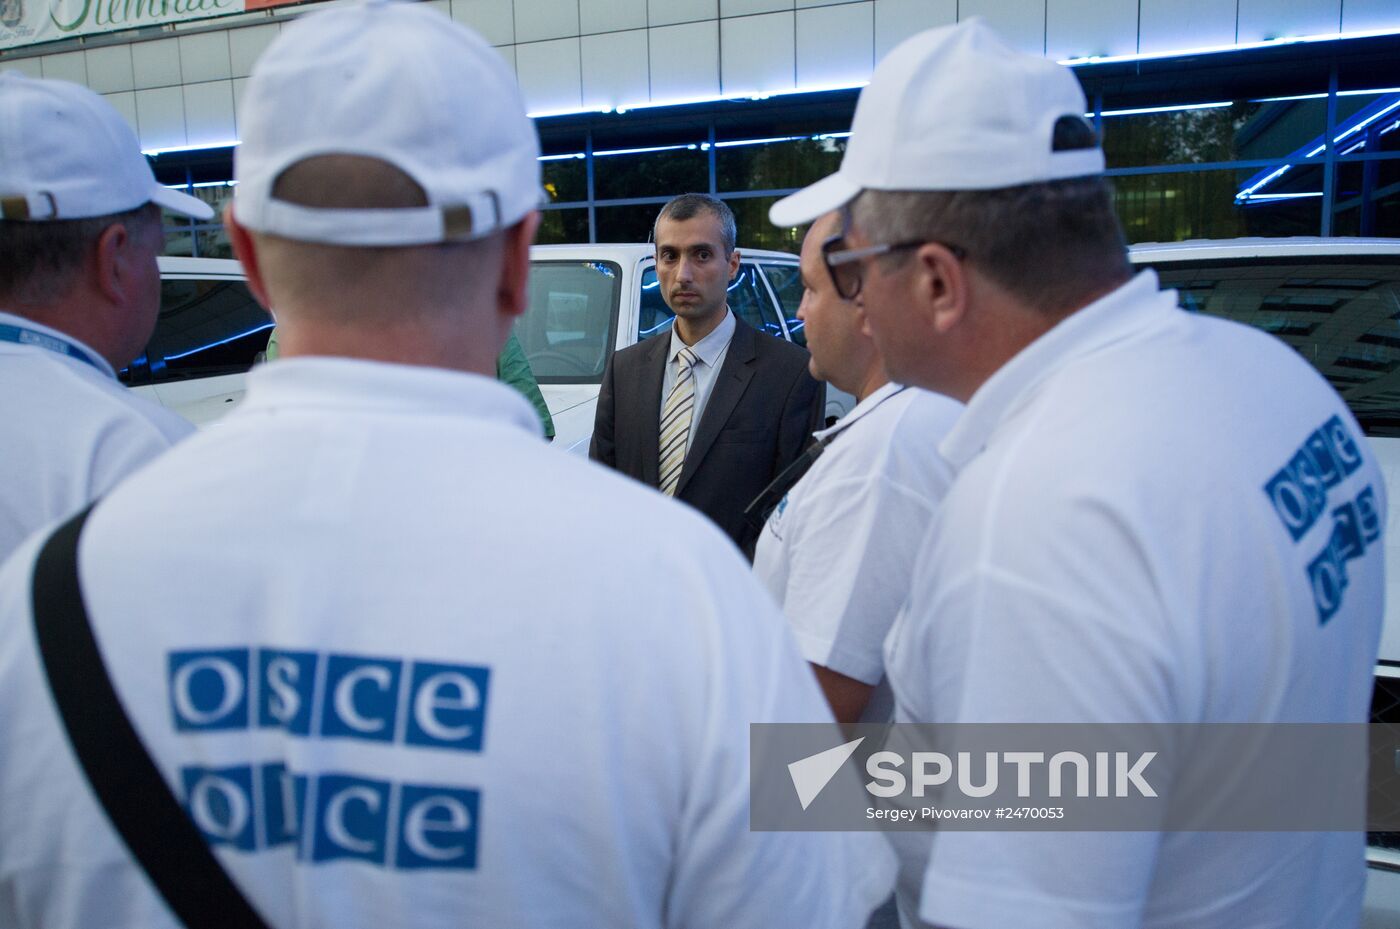 OSCE mission arrives in Rostov-on-Don